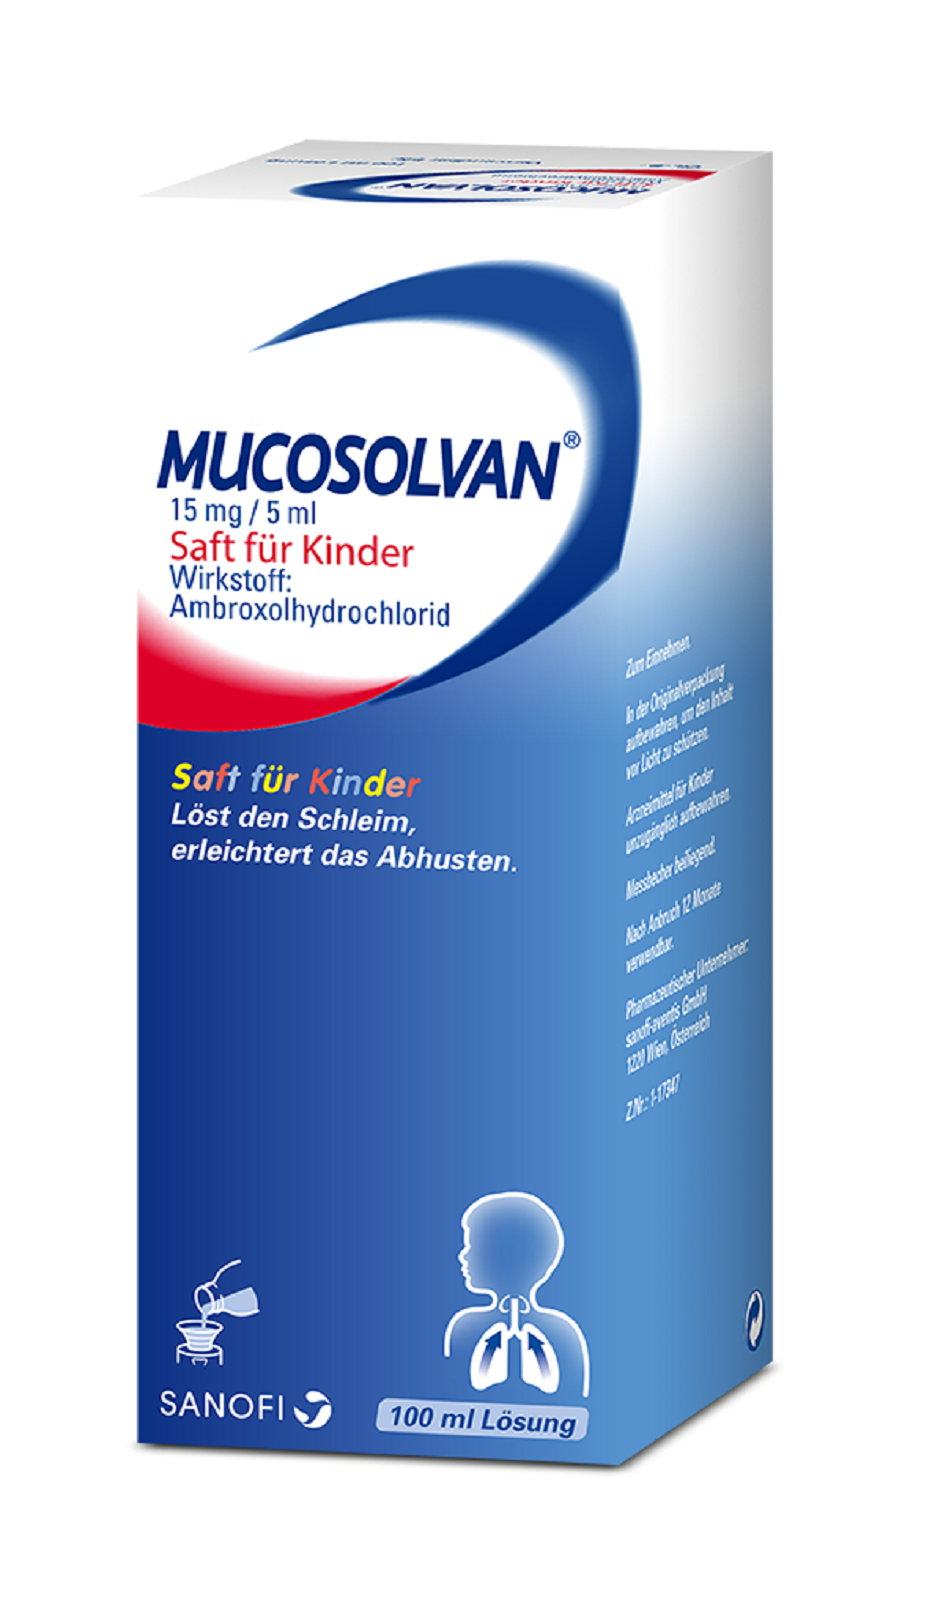 Mucosolvan 15 mg/5 ml - Saft für Kinder